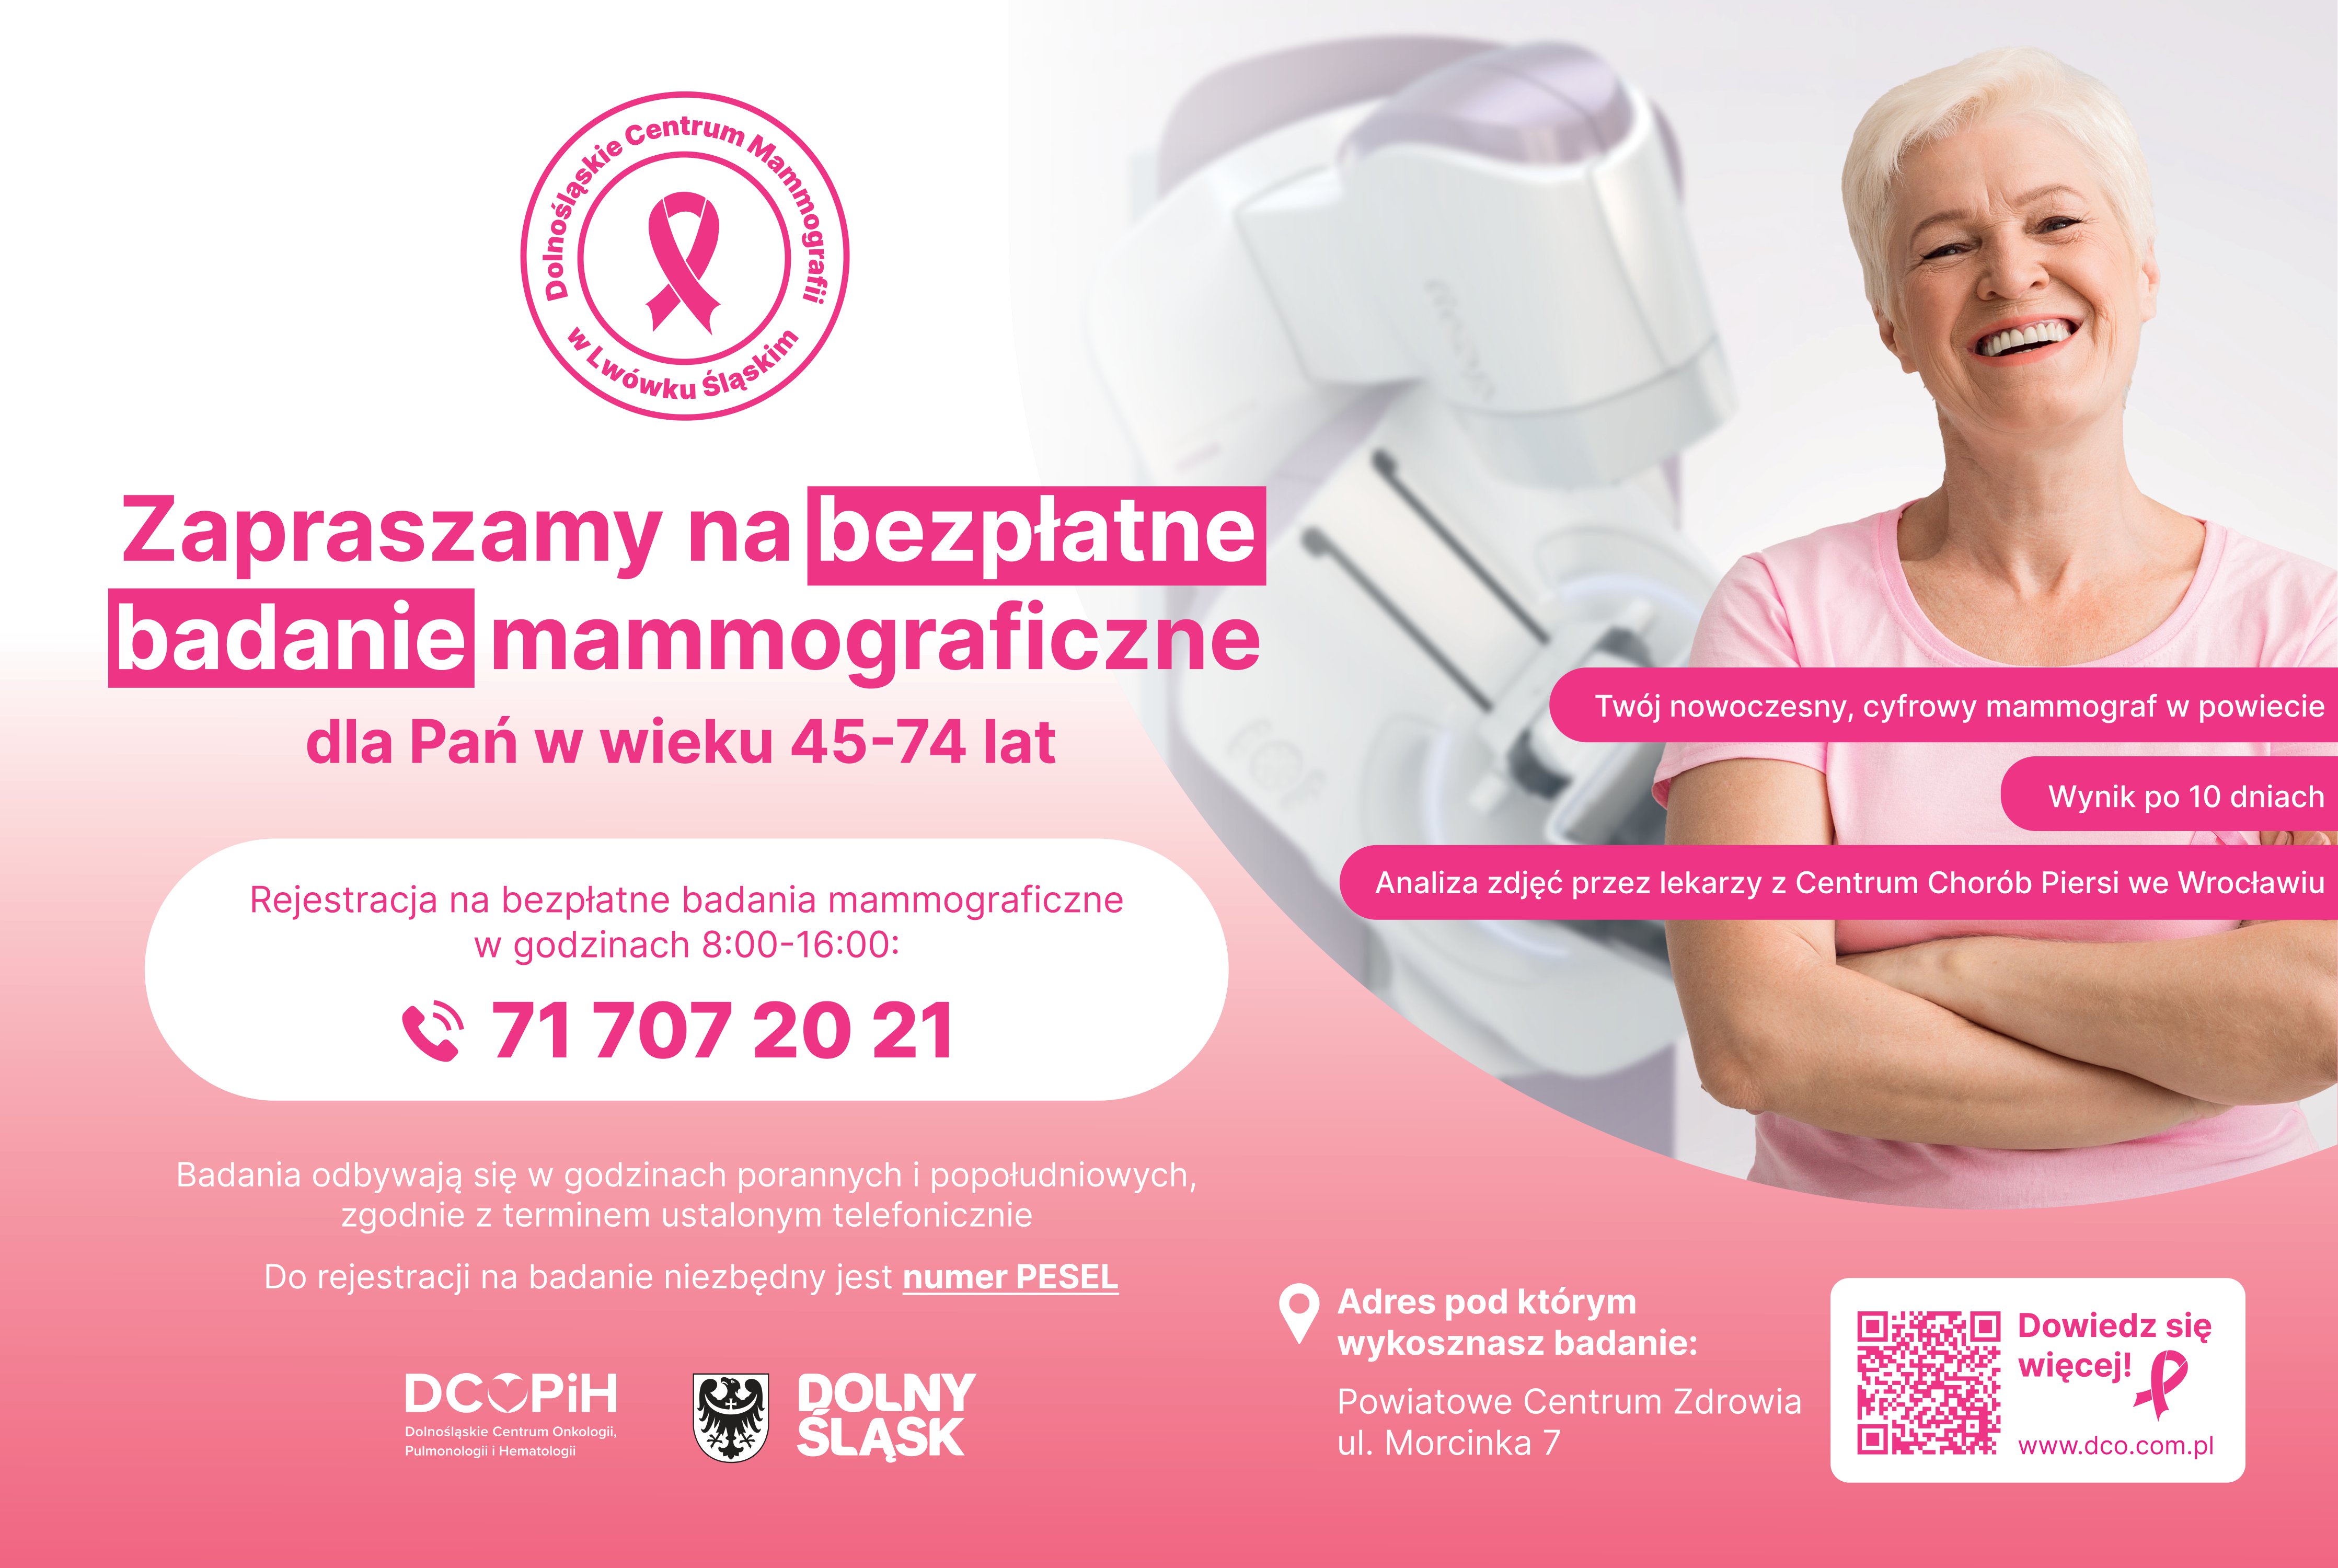 Mammografia w Przychodni przy ul. Morcinka 7, rejestracja pod nr tel. 71 707 20 21